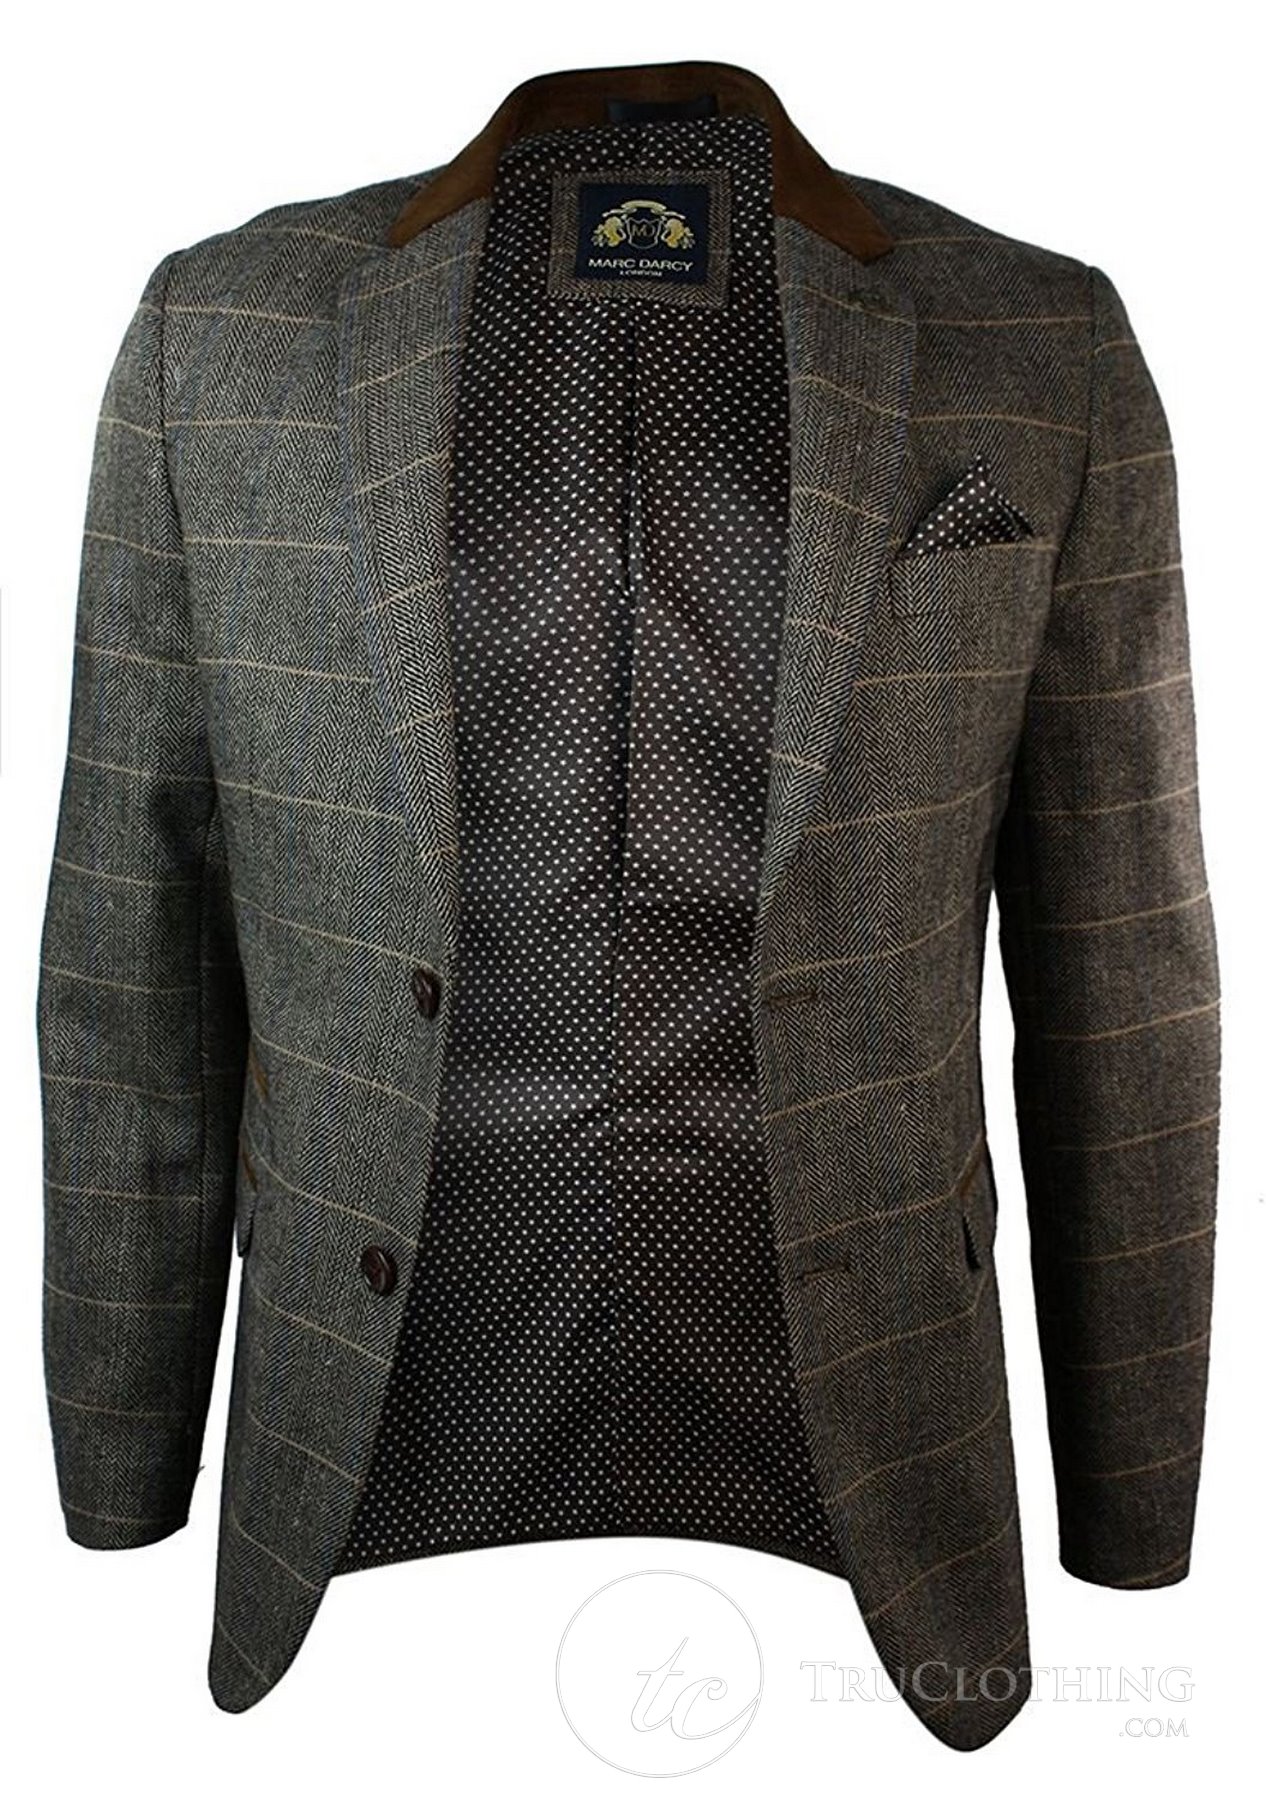 Mens Check Vintage Herringbone Tweed Grey Charcoal Blazer Jacket Fitted